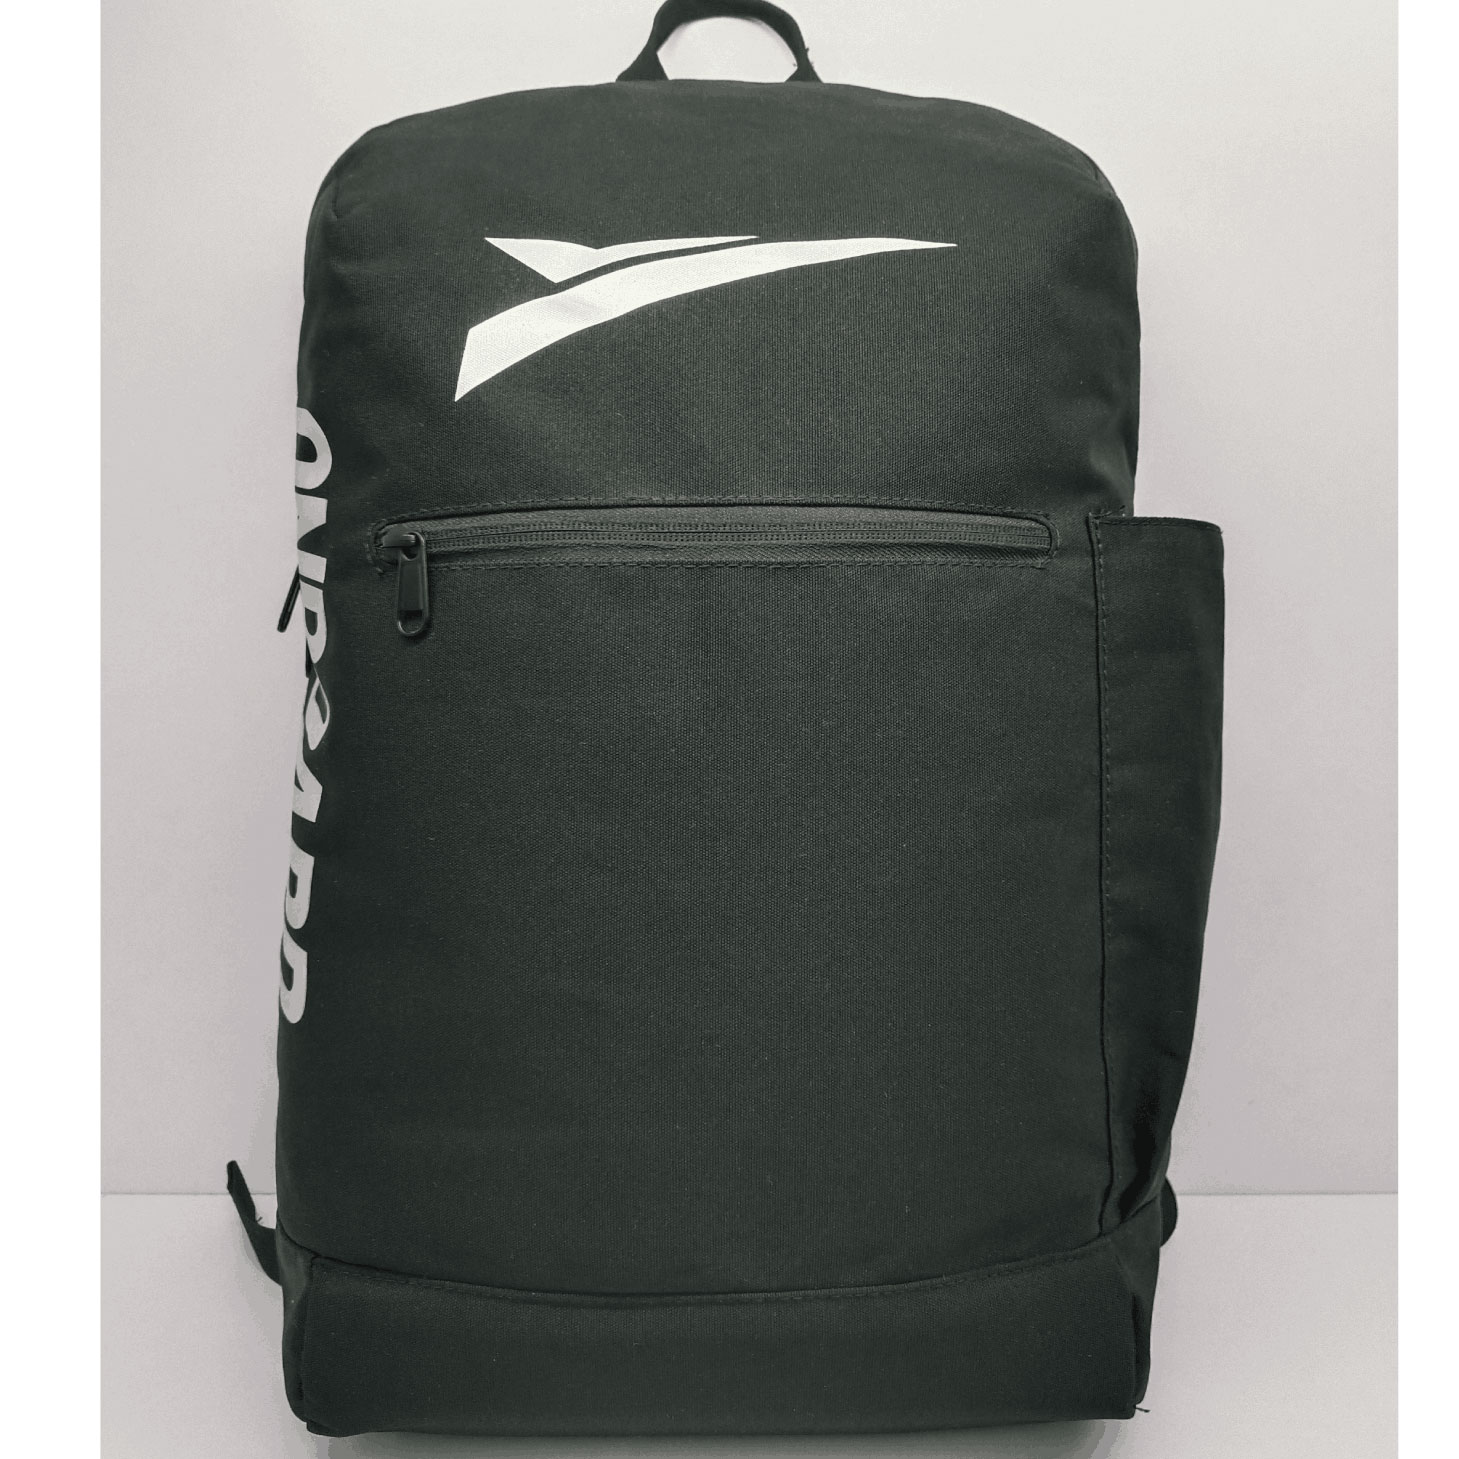 Polyester Black Laptop Backpack